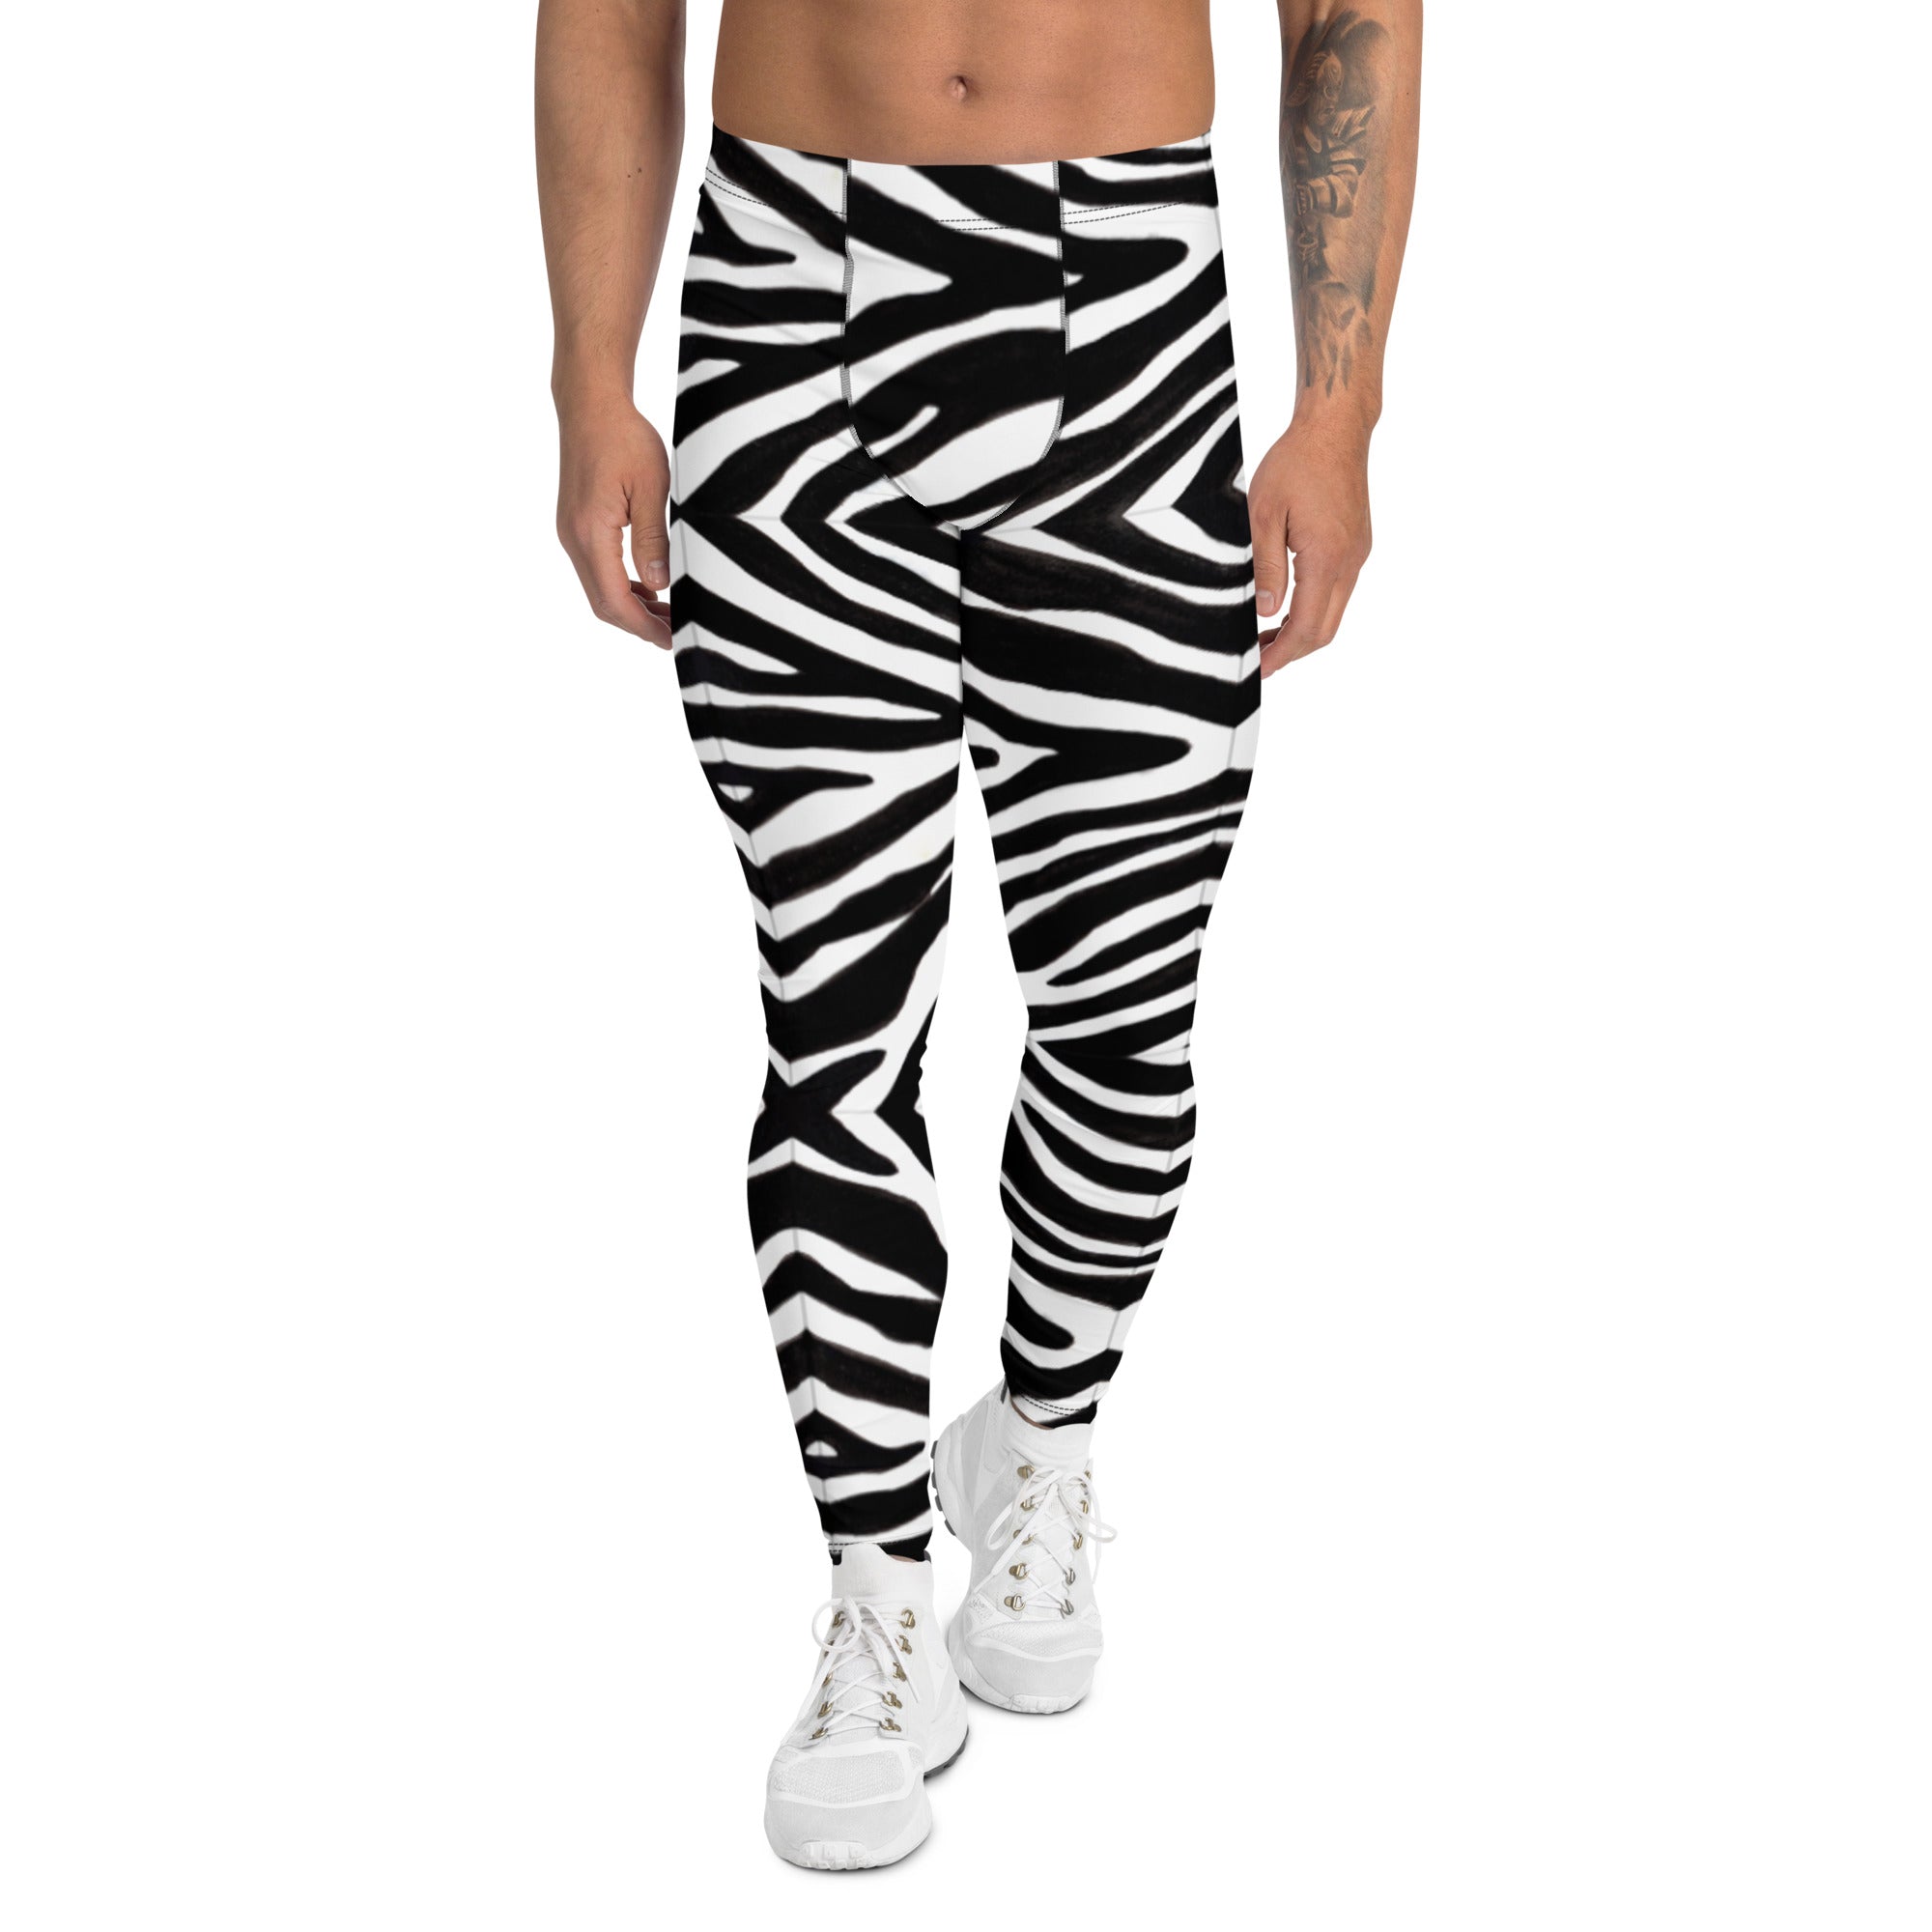 Zebra Animal Print 80s Leggings Black & White斑馬動物紋內搭褲